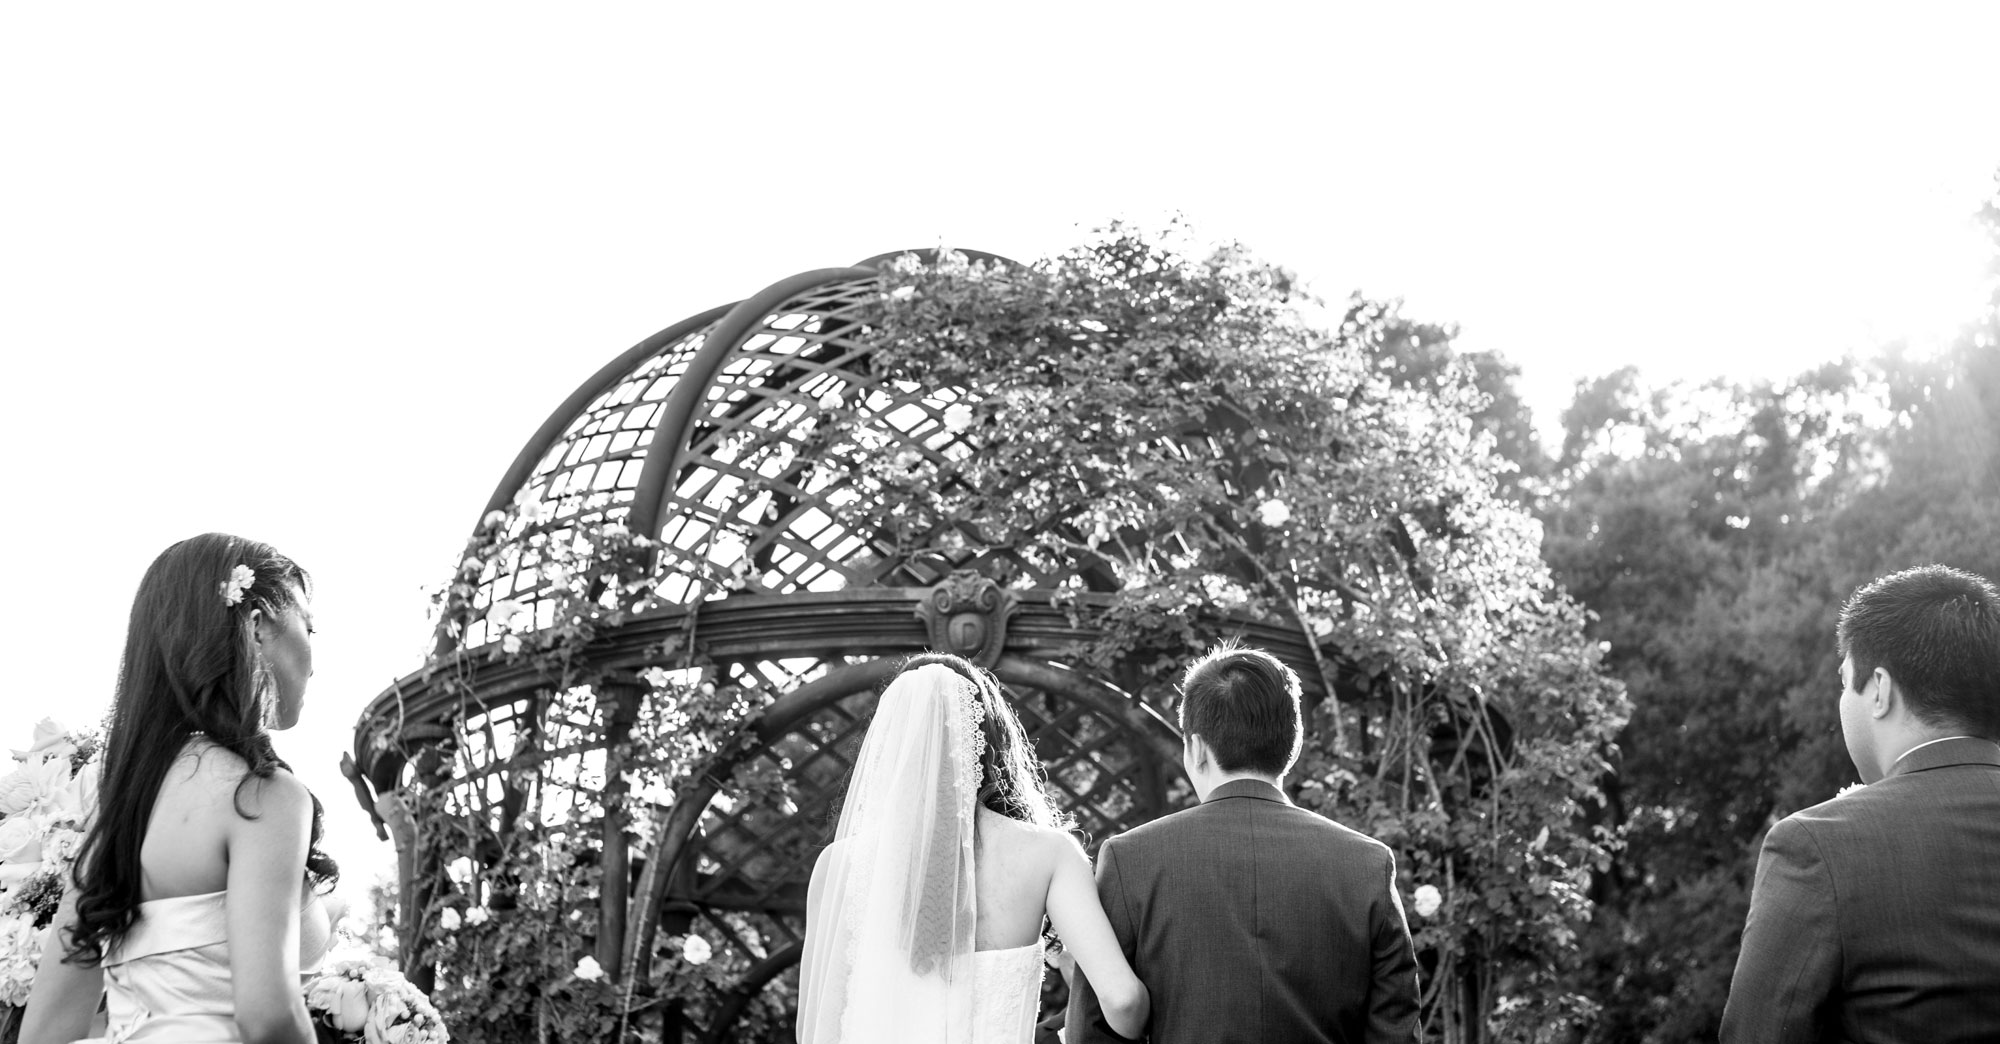 Angie & James’ Descanso Gardens Wedding featured slider image